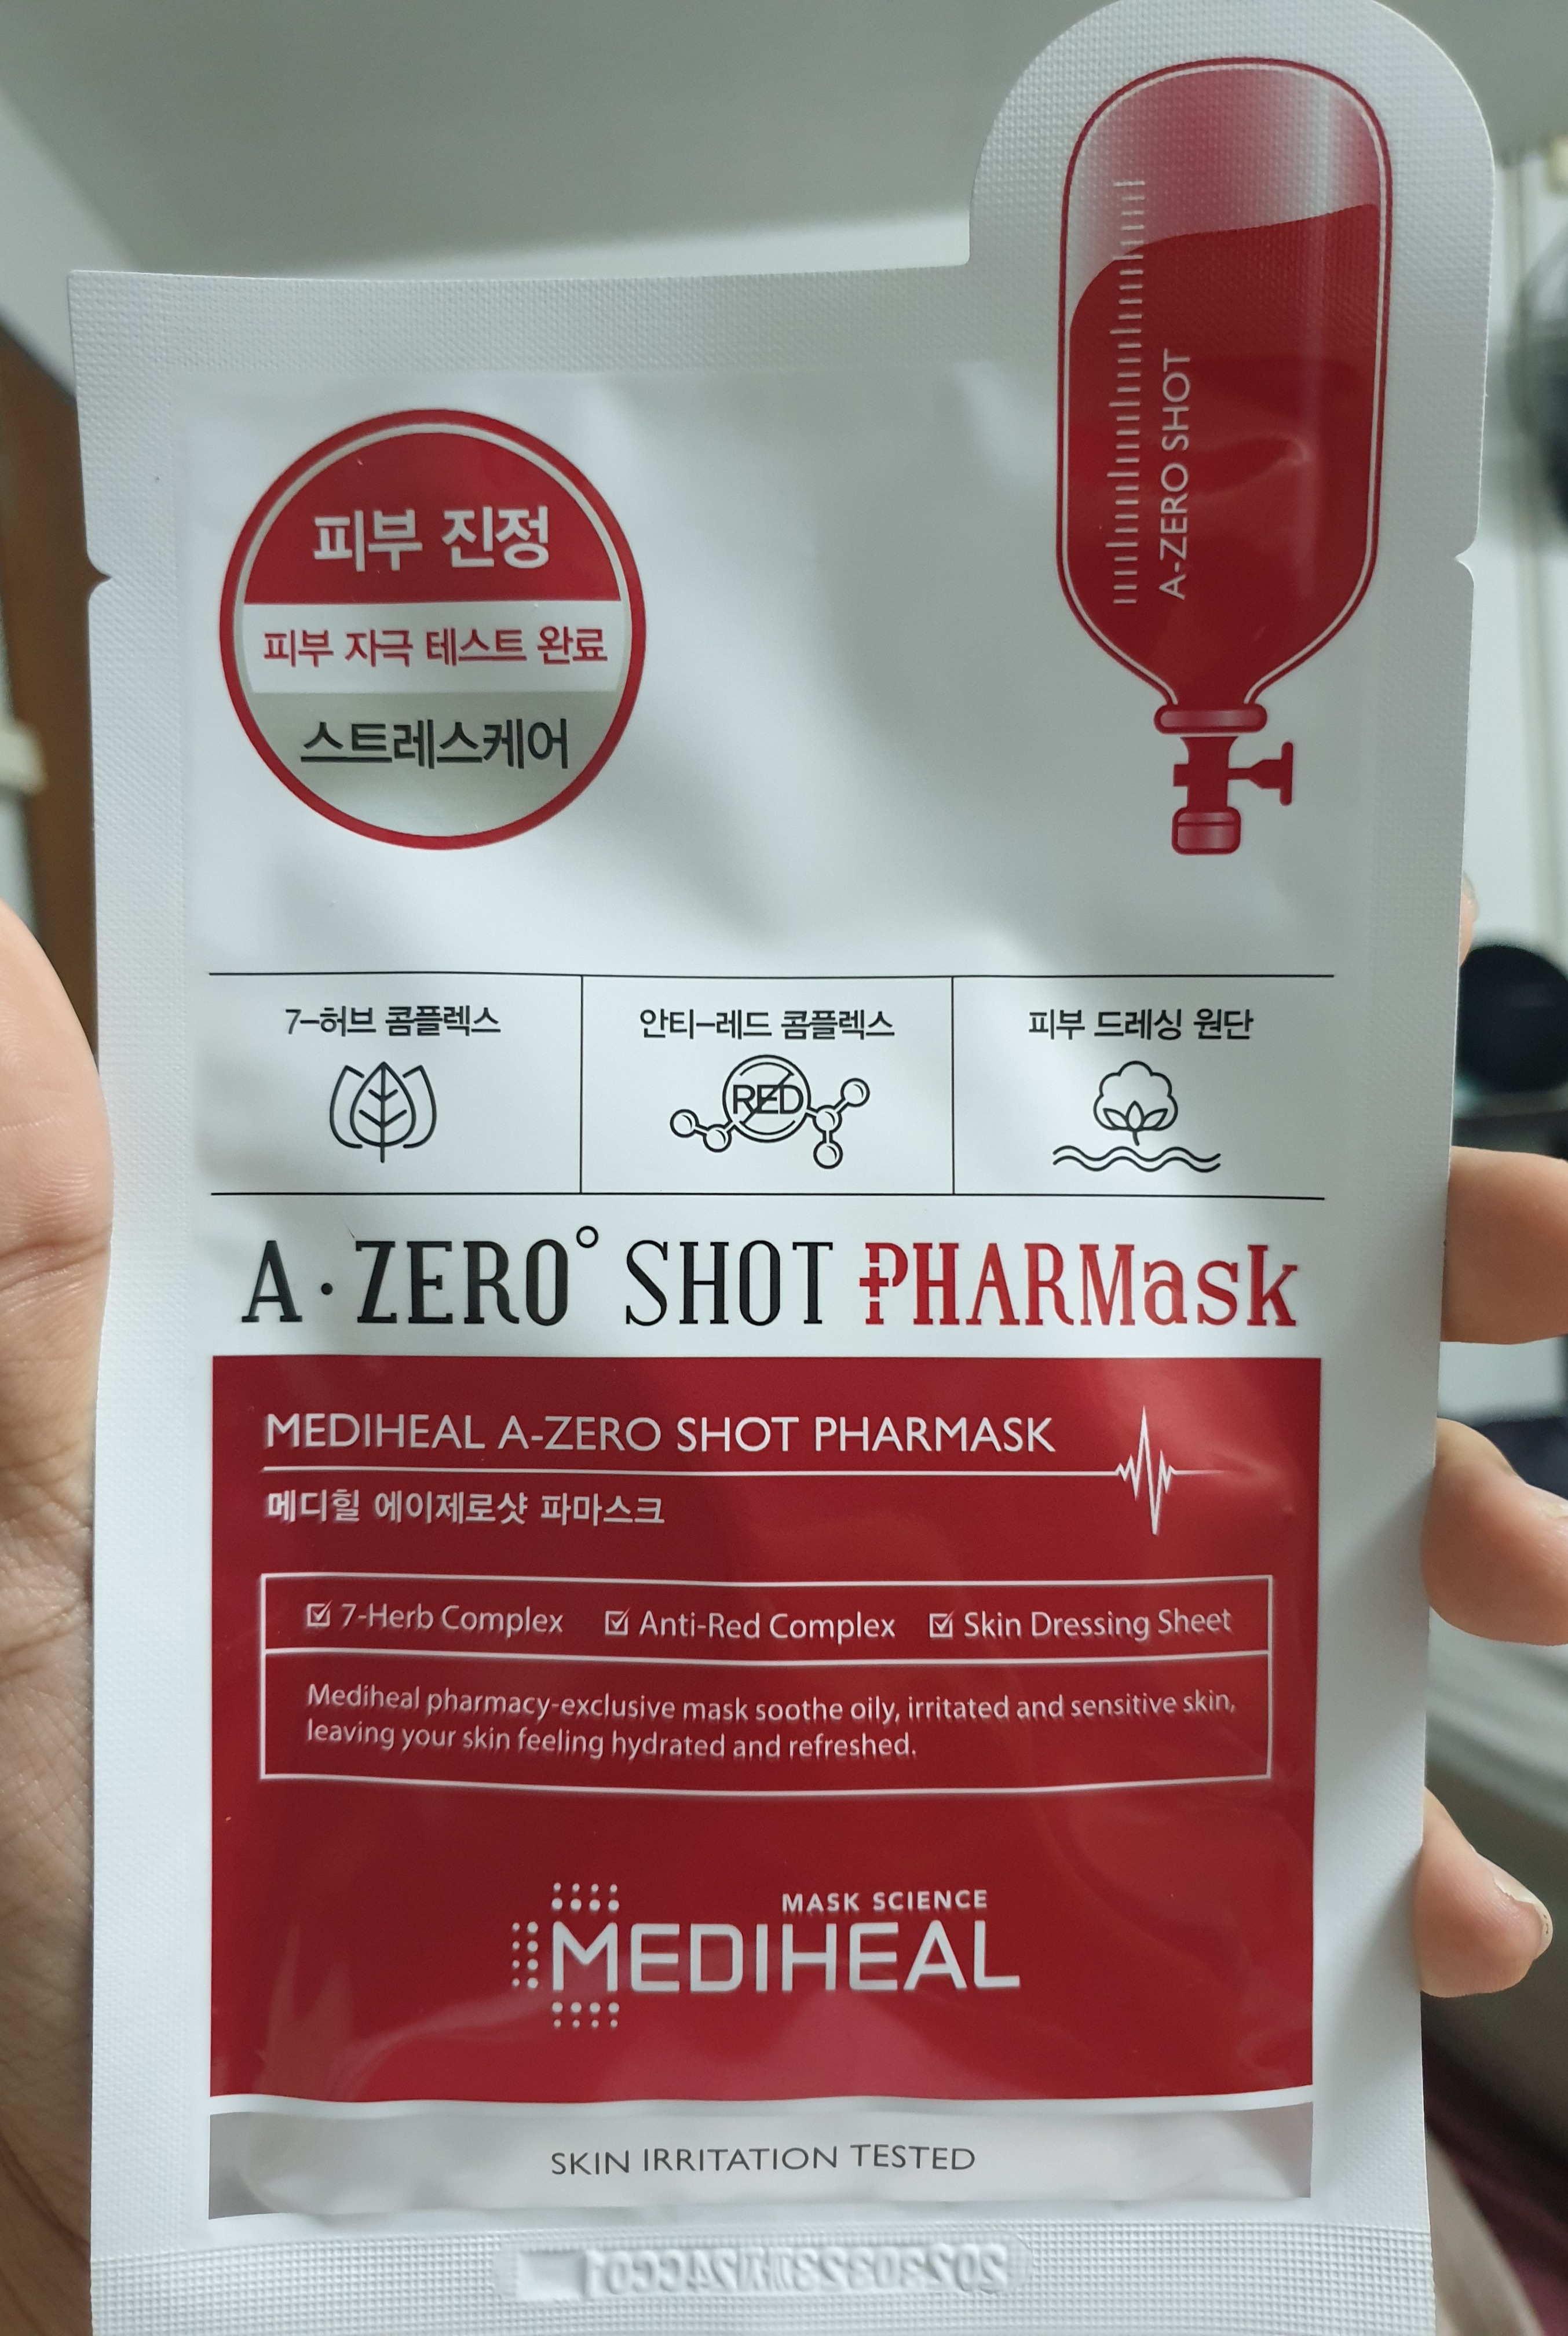 Mediheal A-Zero Short Pharmark